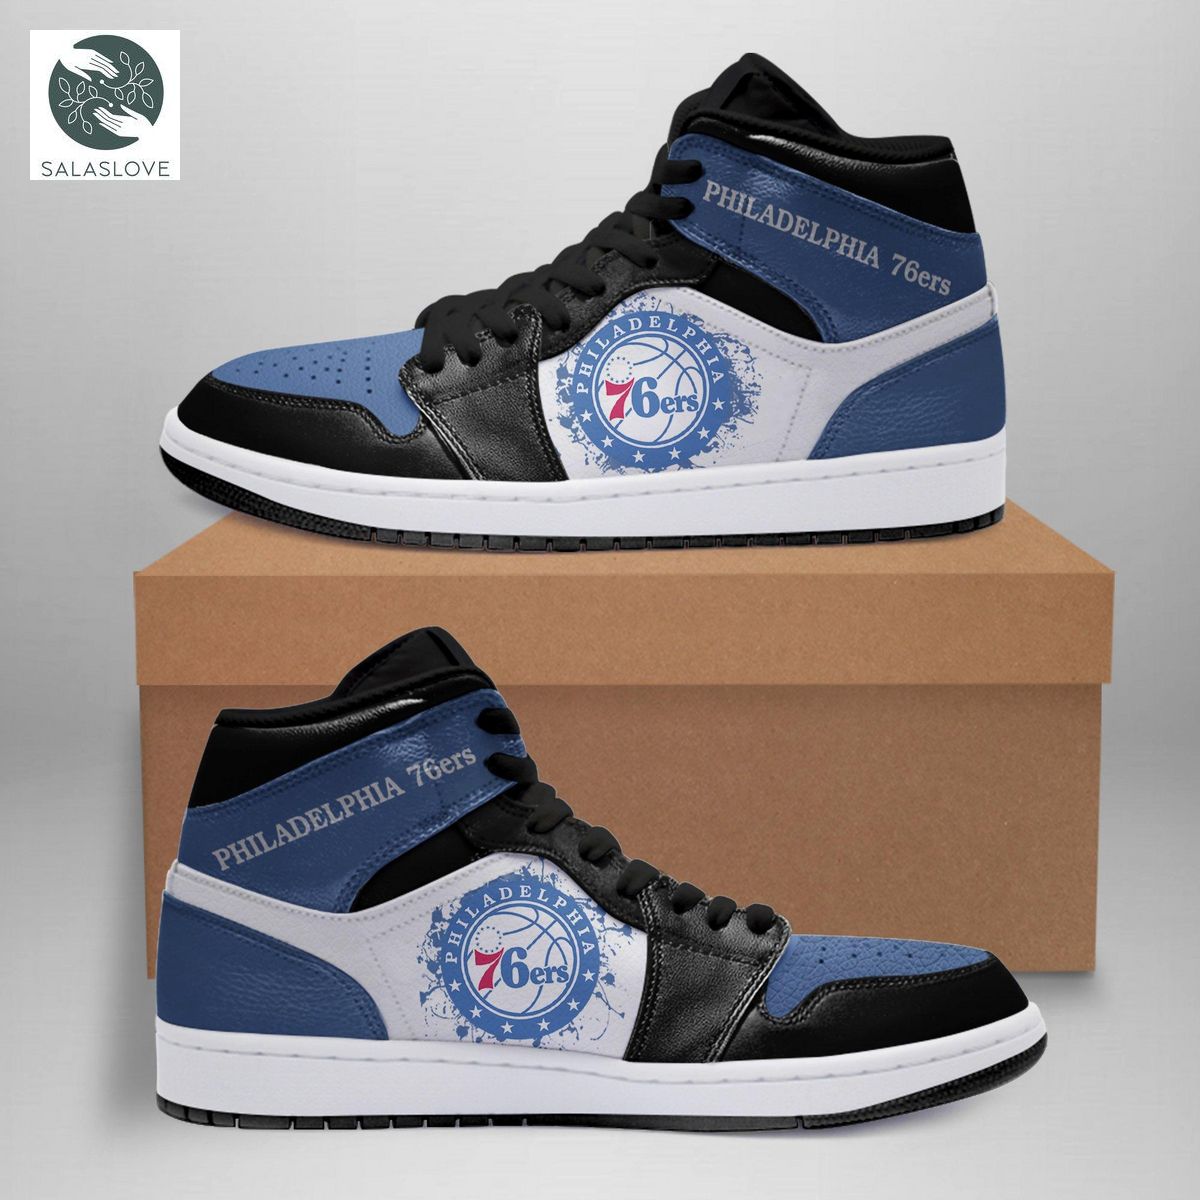 Philadelphia 76ers Nba Sneakers Air Jordan 11